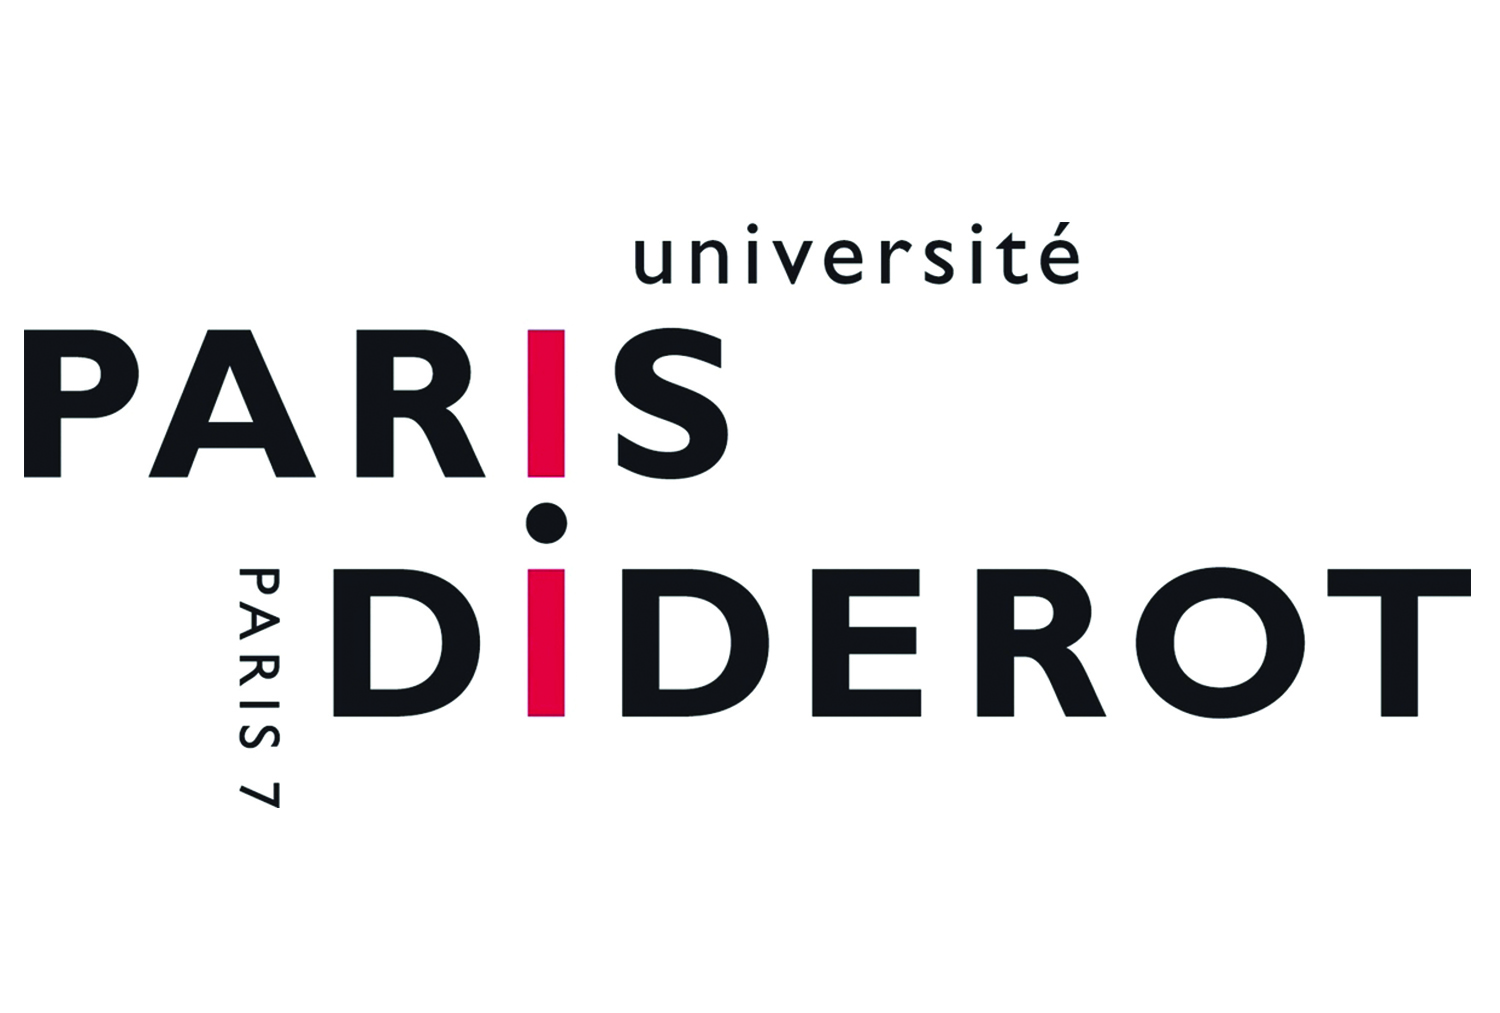 universite paris diderot